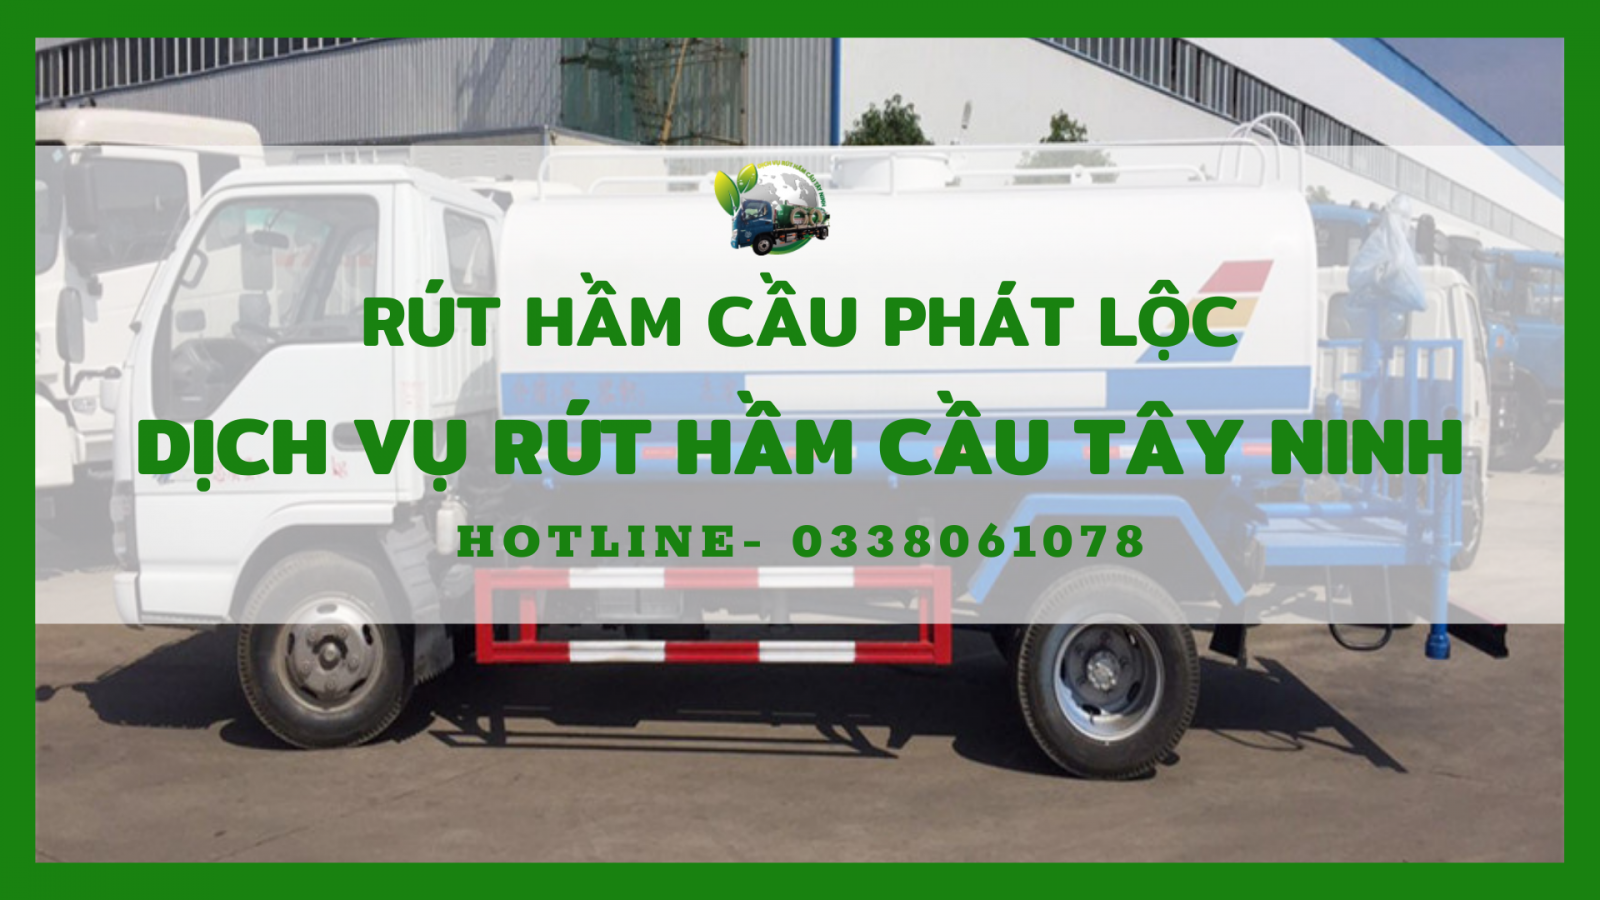 Dịch vụ rút hầm cầu Tây Ninh